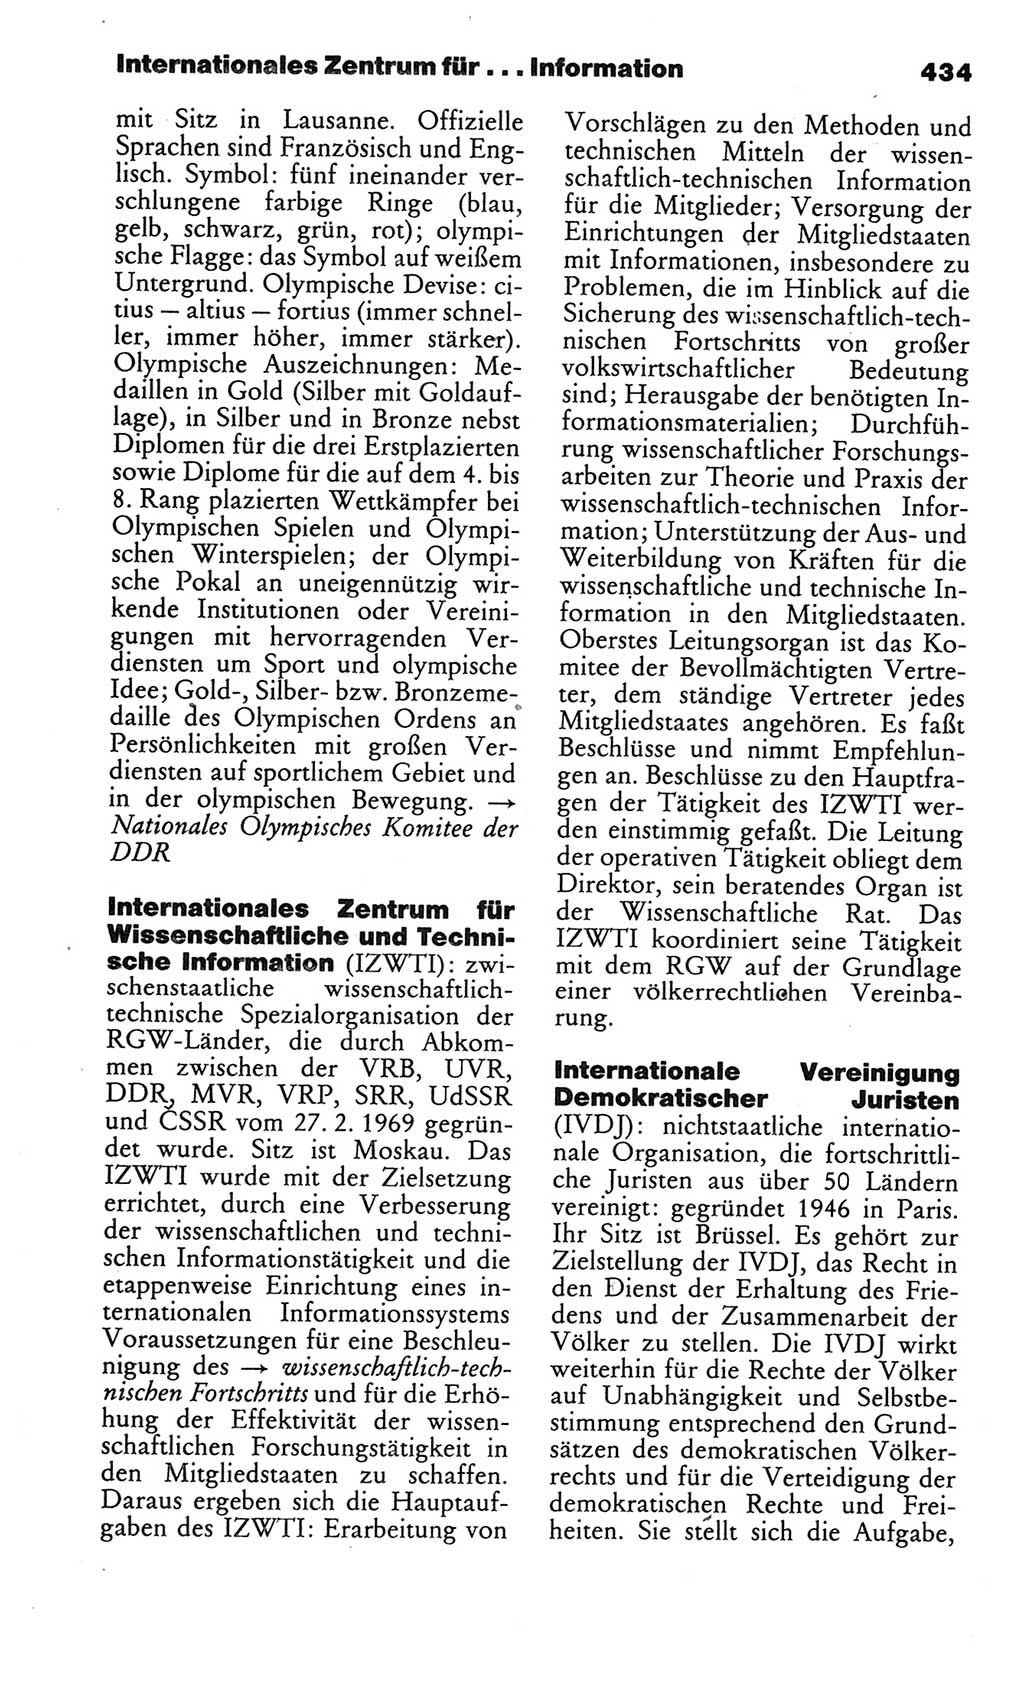 Kleines politisches Wörterbuch [Deutsche Demokratische Republik (DDR)] 1986, Seite 434 (Kl. pol. Wb. DDR 1986, S. 434)